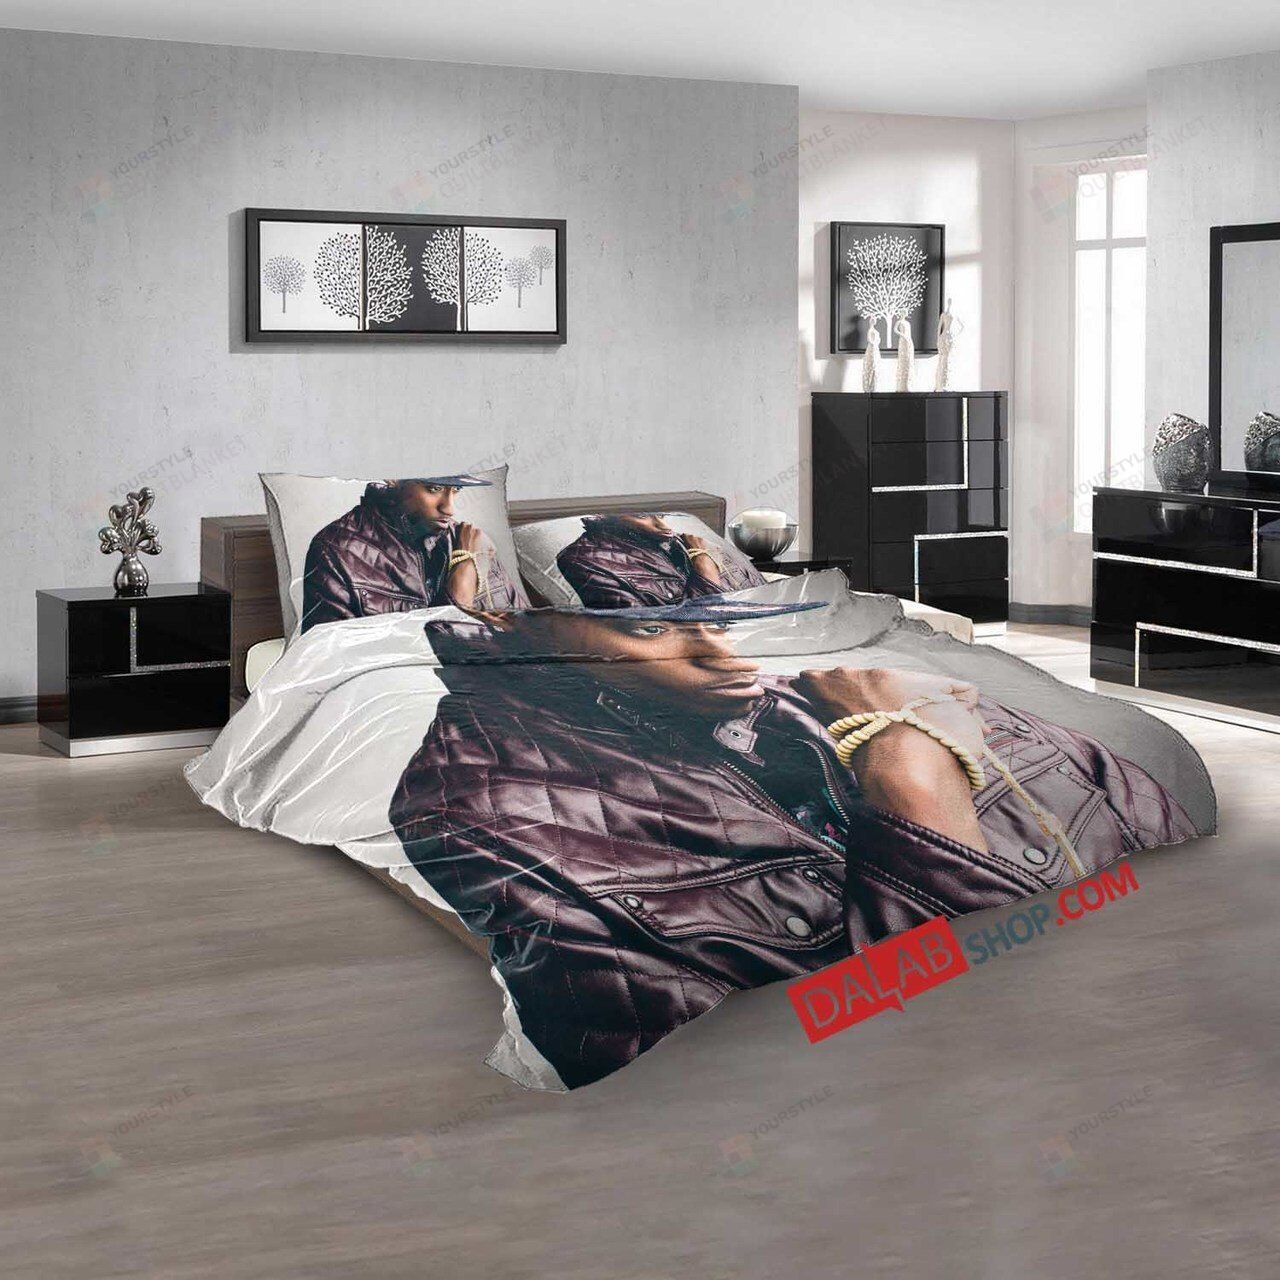 Famous Rapper Lecrae Duvet Cover Bedding Sets